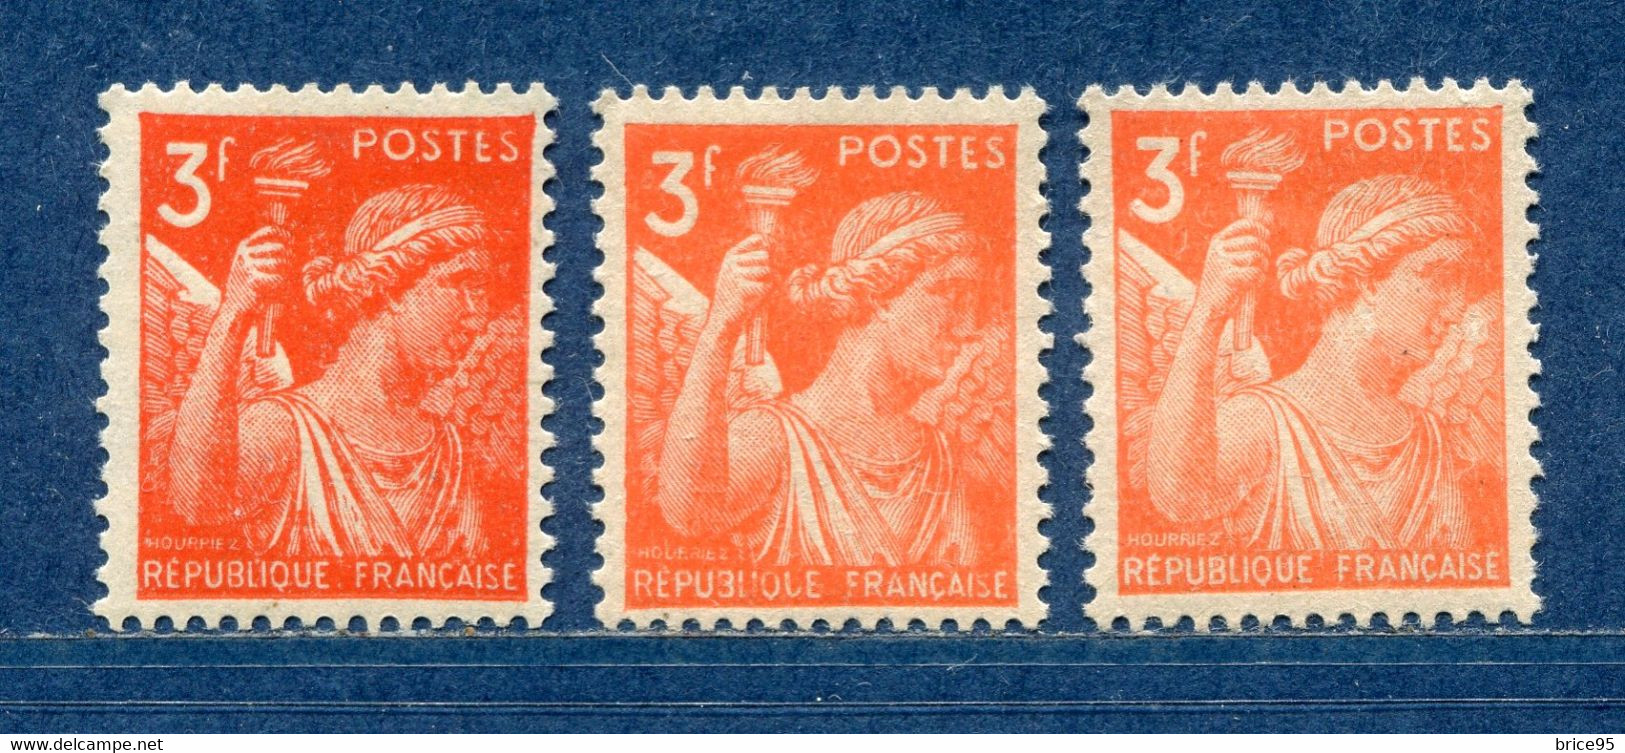 ⭐ France - Variété - YT N° 655 - Couleurs - Pétouilles - Neuf Sans Charnière - 1944 ⭐ - Unused Stamps